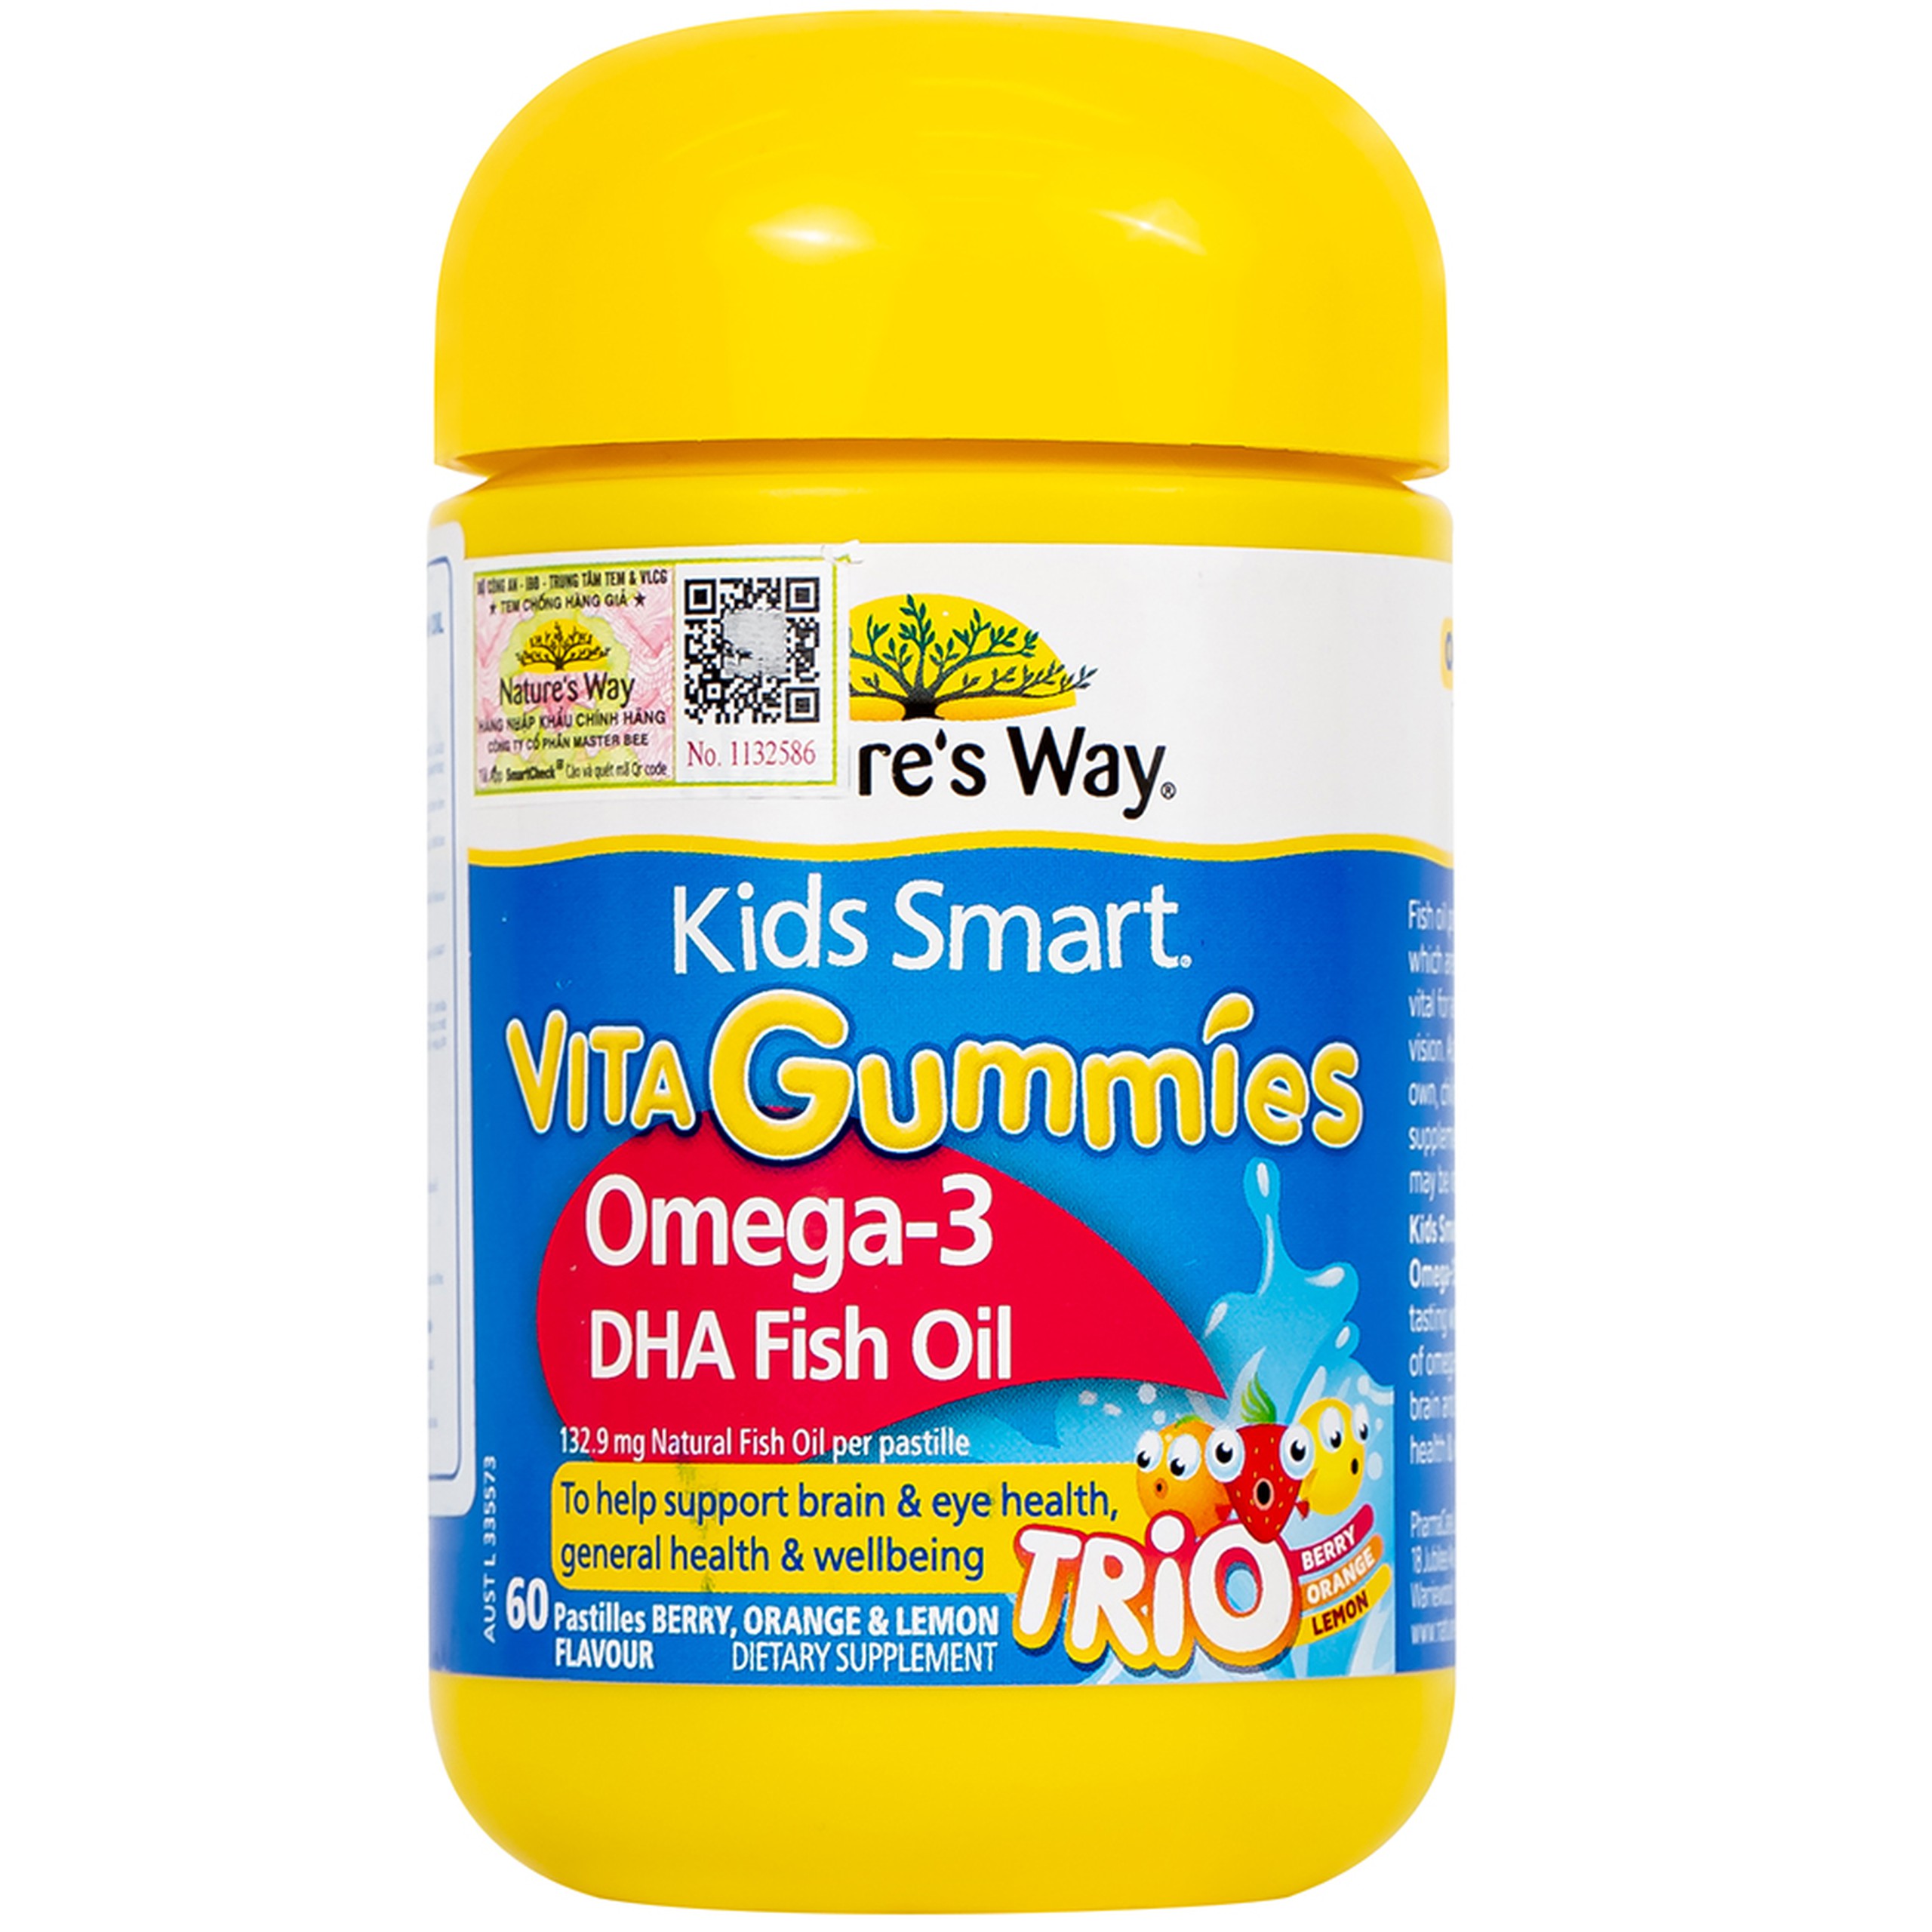 Viên nhai Nature's Way Kids Smart Vita Gummies Omega-3 DHA Fish Oil hỗ trợ tăng cường sức khỏe (60 viên)